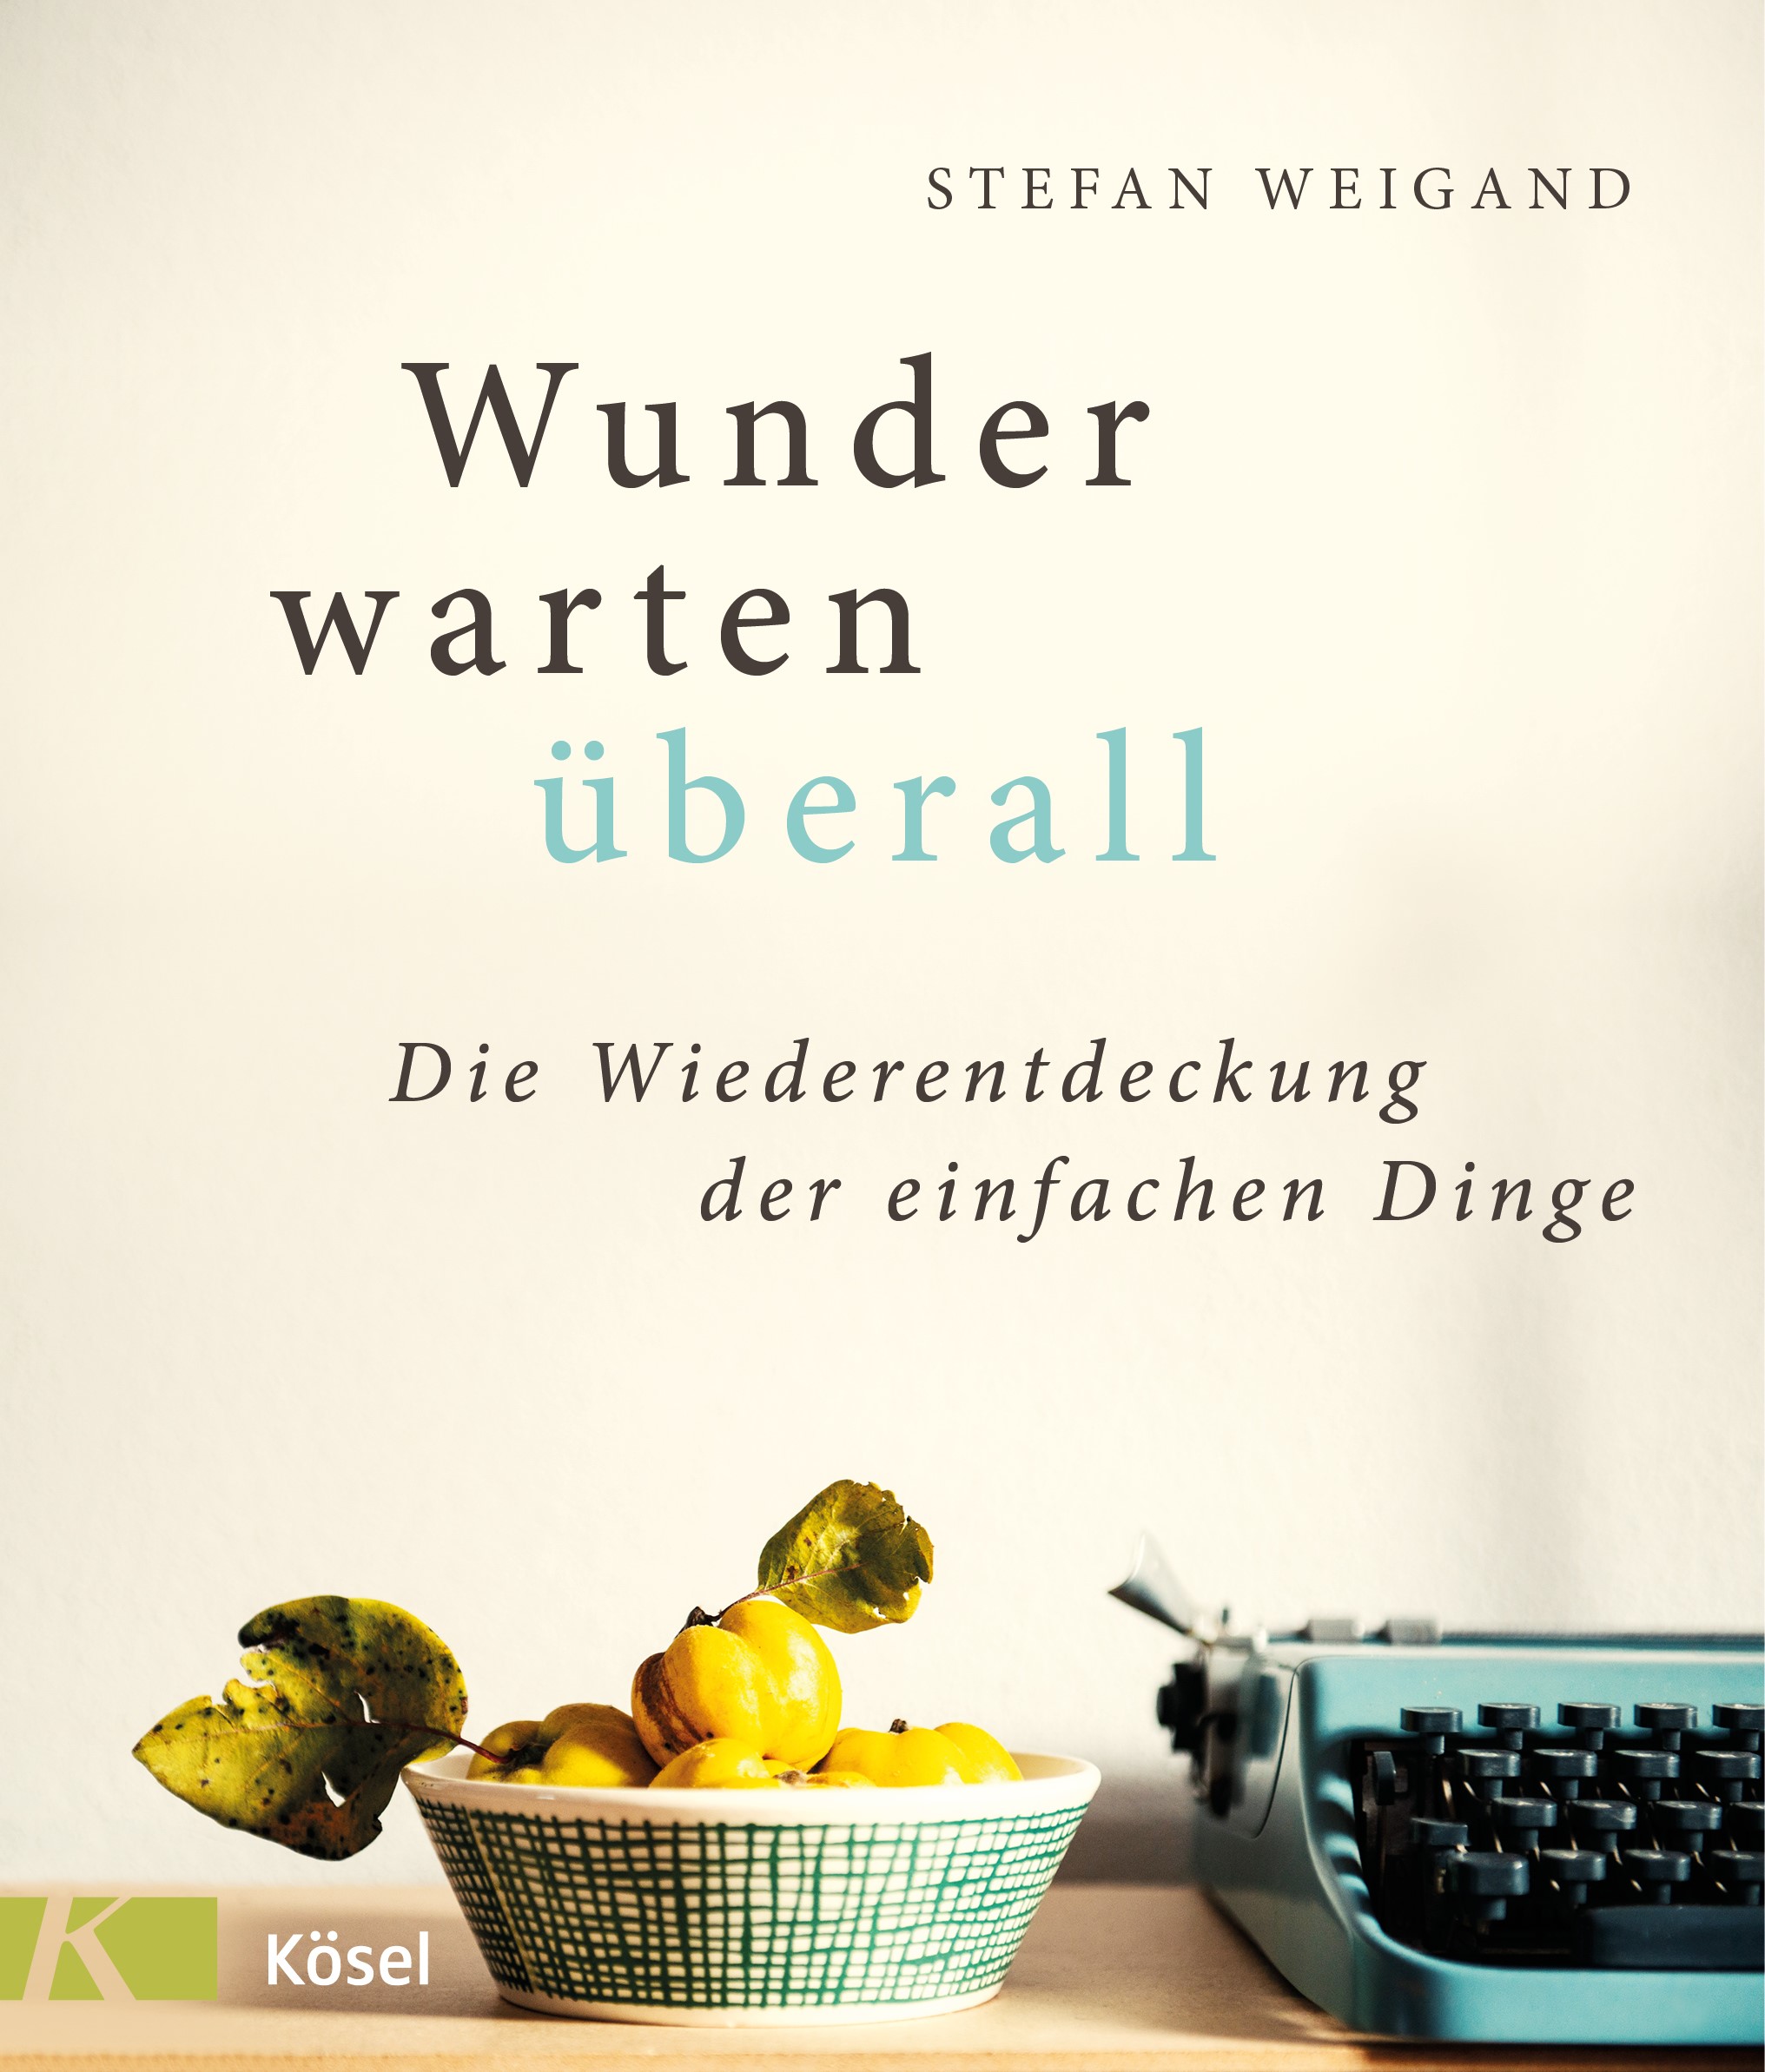 Cover des Buches "Wunder warten überall" von Stefan Weigand